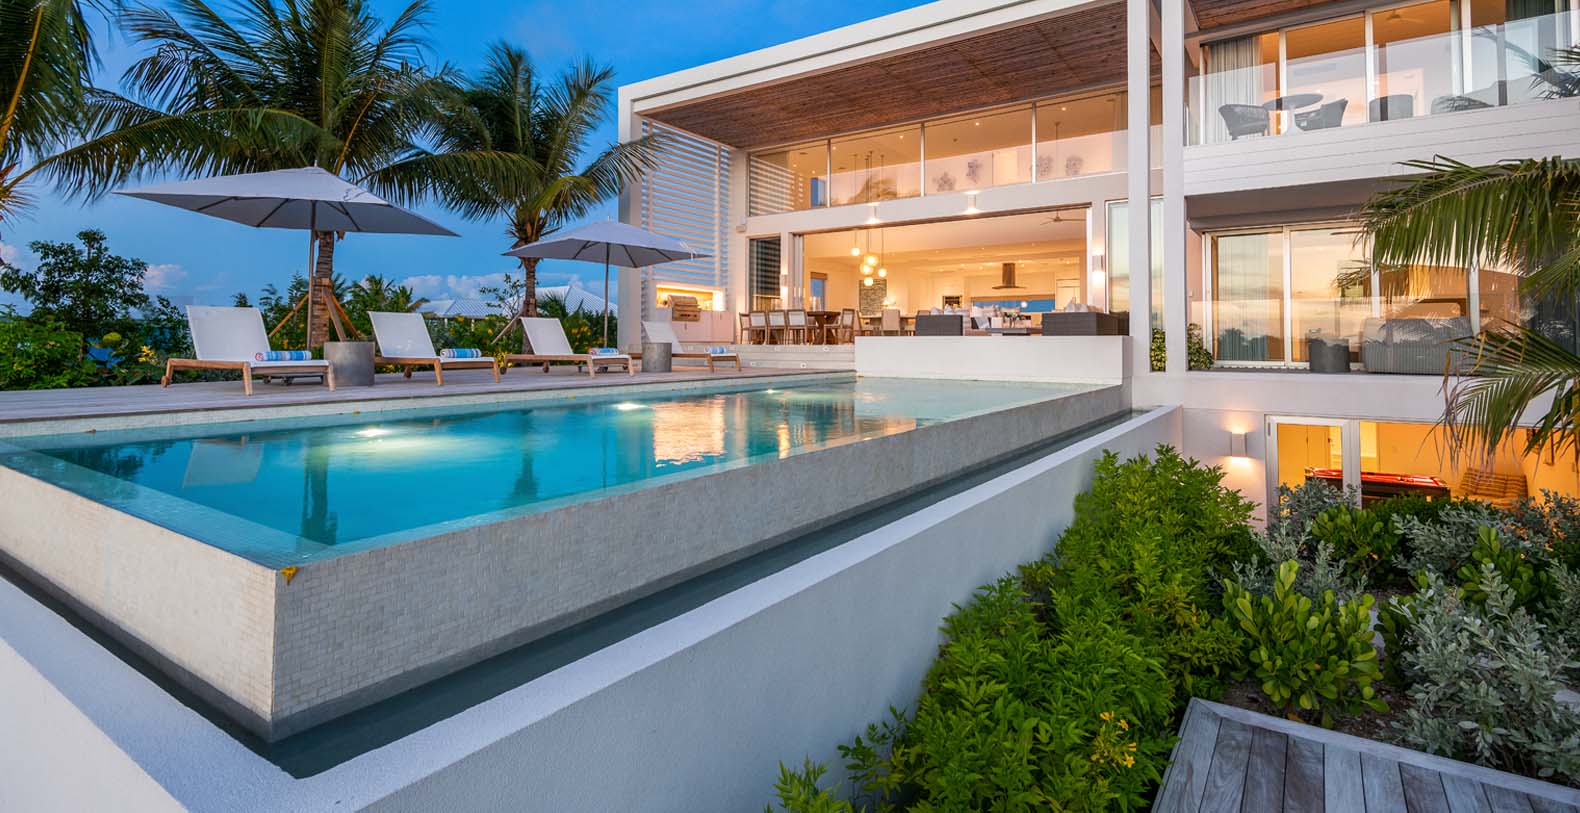 BE Grace Bay 5 Bedroom Ocean View Turks & Caicos Villa Rental